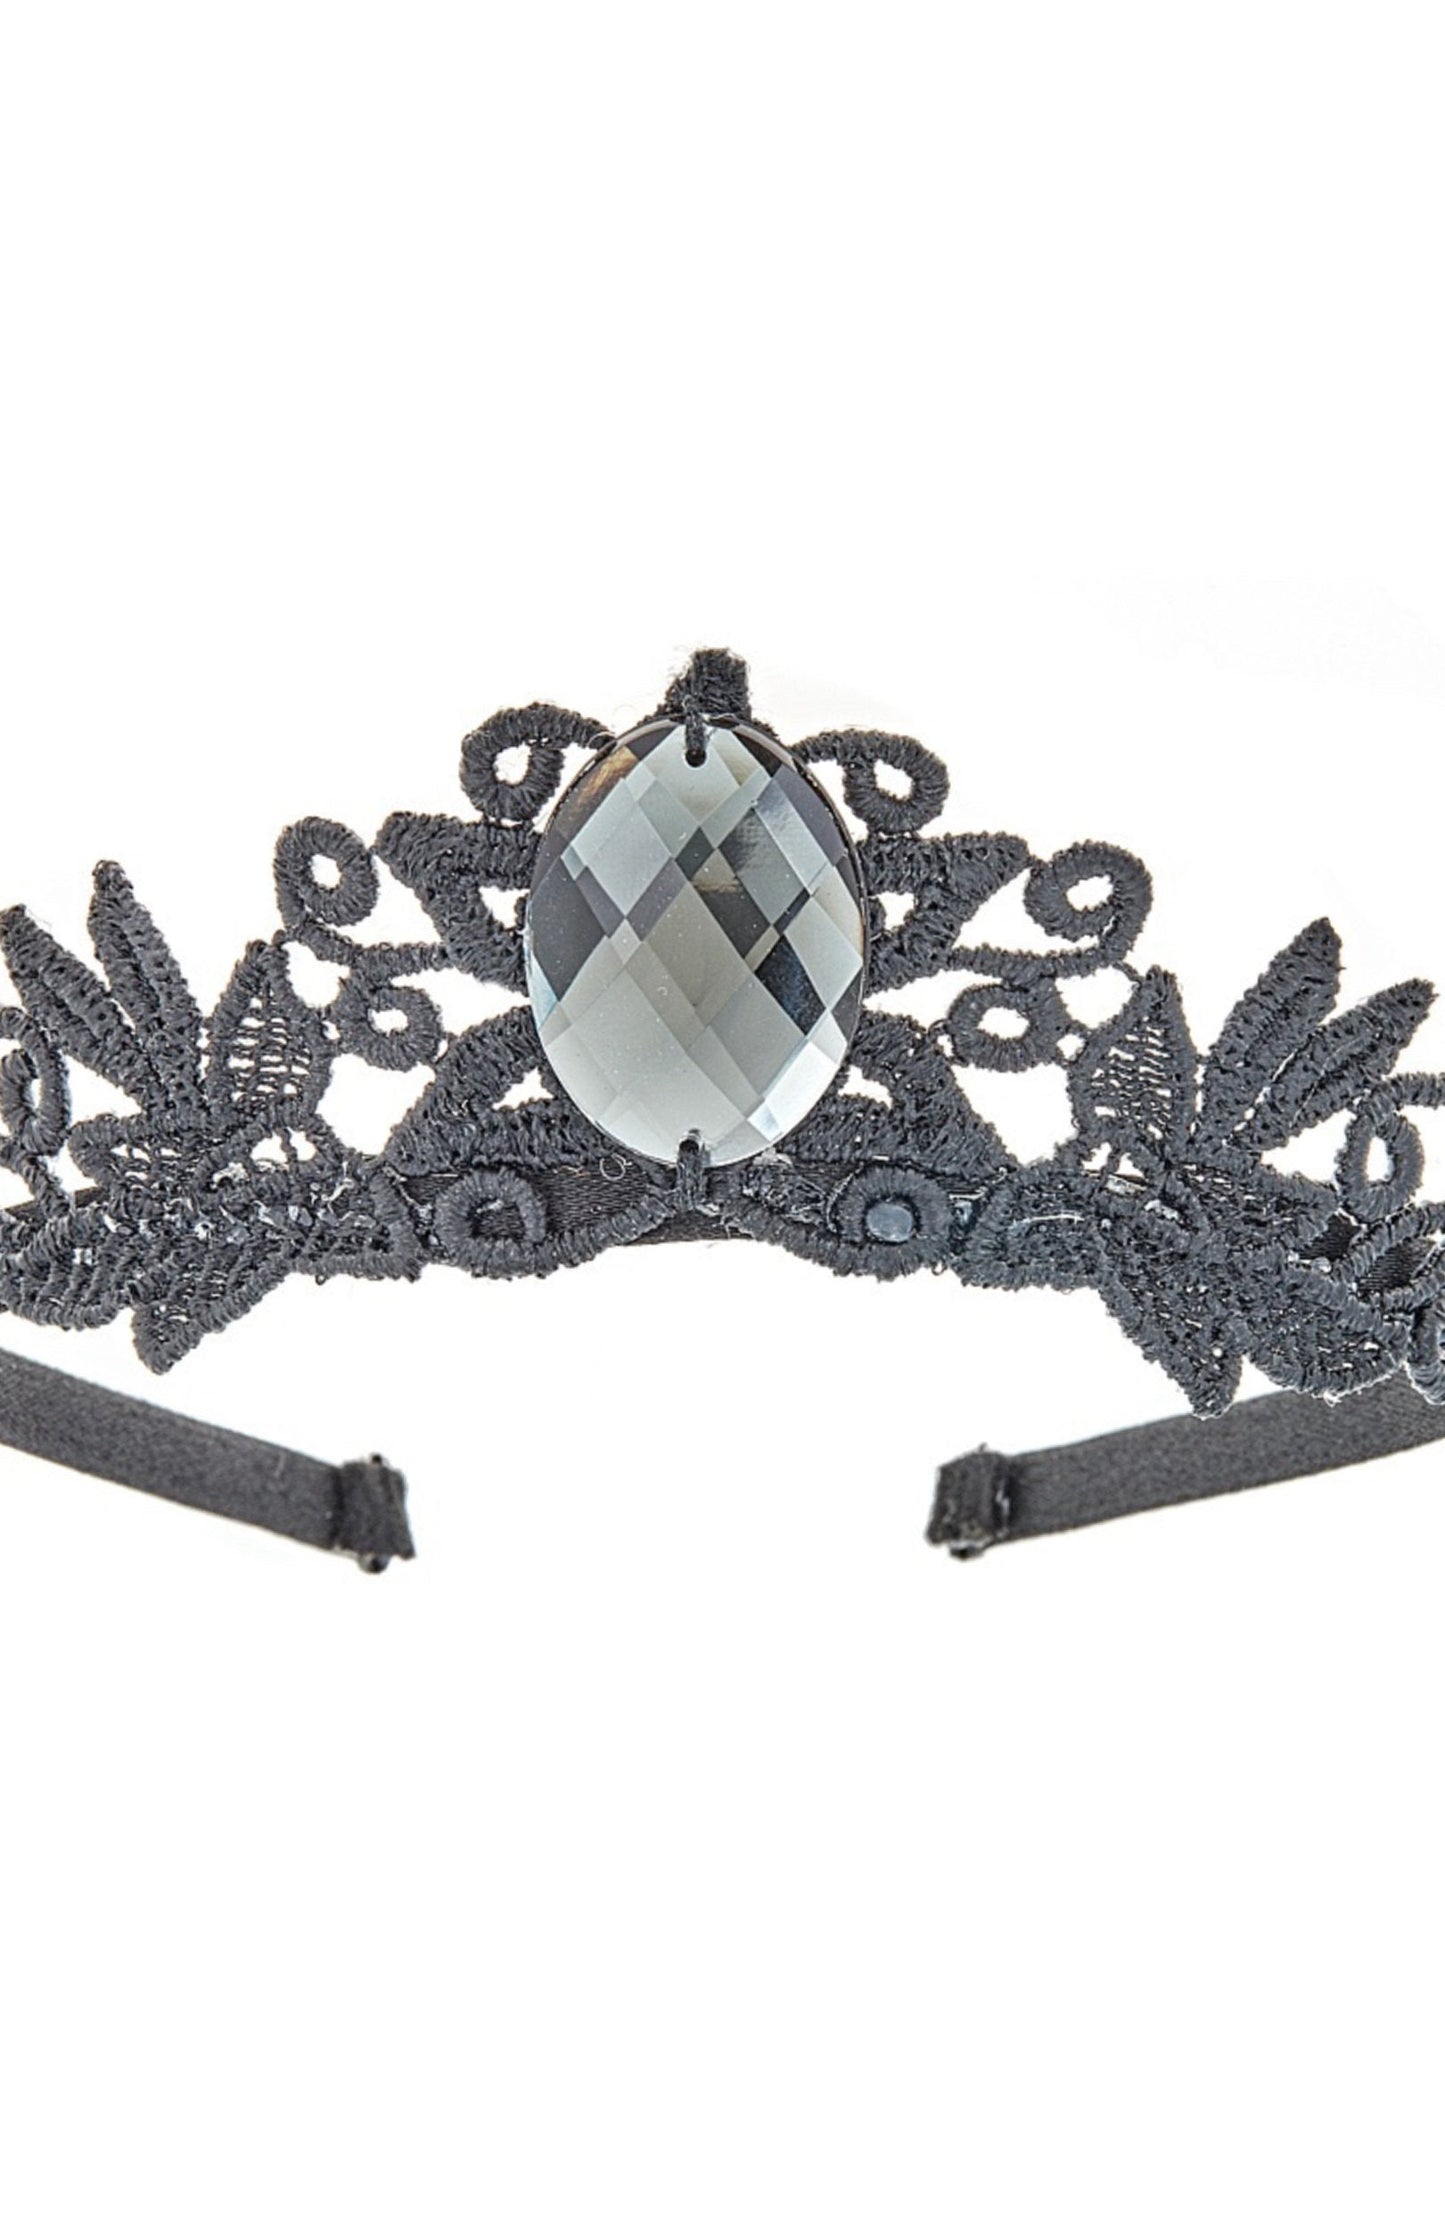 Crowns & Tiaras - "Mirror Mirror" Princess Crown - Black Large Gem